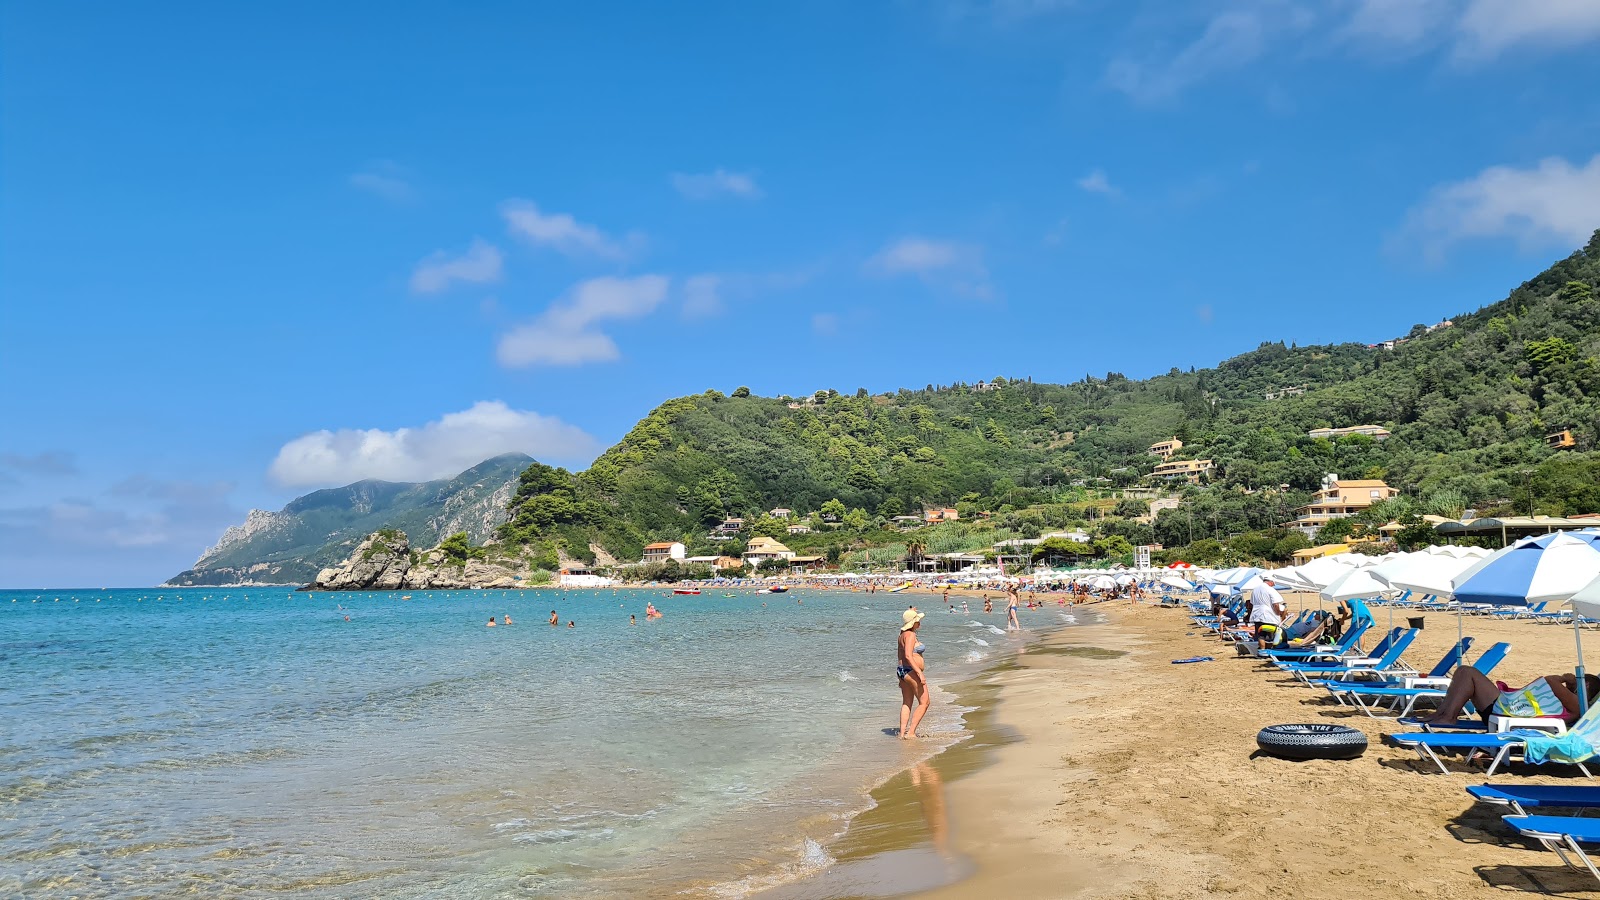 Kontogialos Plajı'in fotoğrafı parlak ince kum yüzey ile